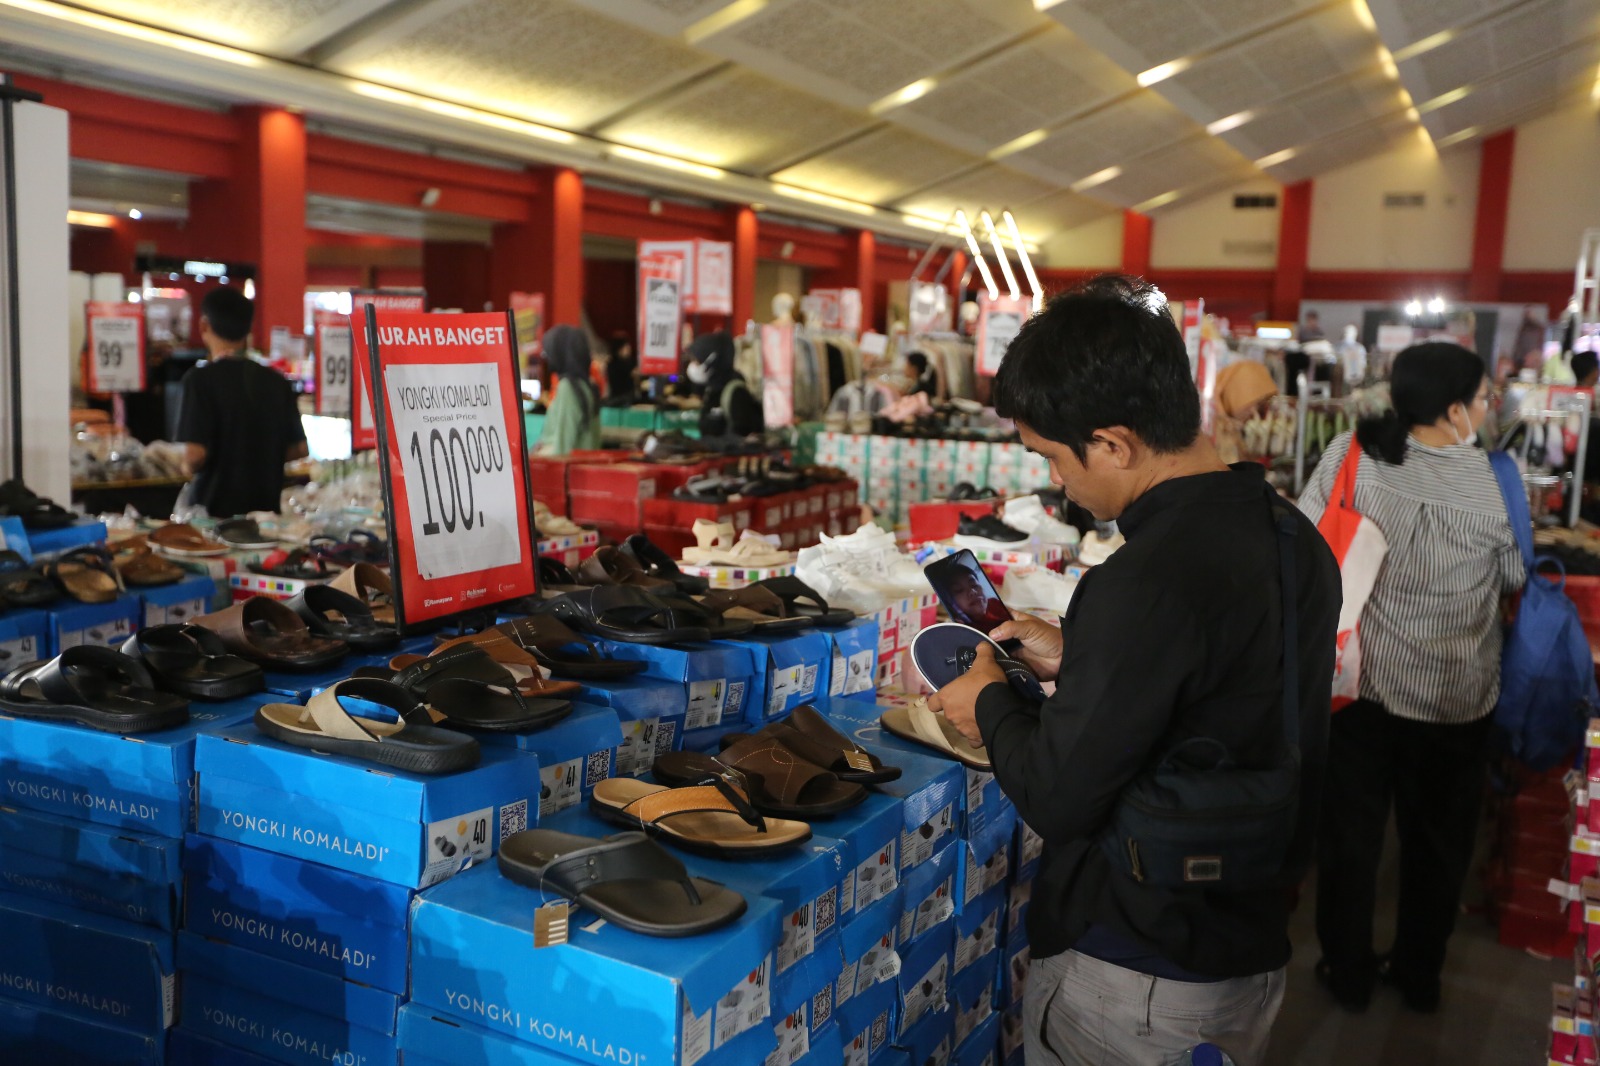 Banjir Promo Menarik di Jakarta Lebaran Fair, Sandal dan Sepatu, 100 Ribu dapat 3 Item